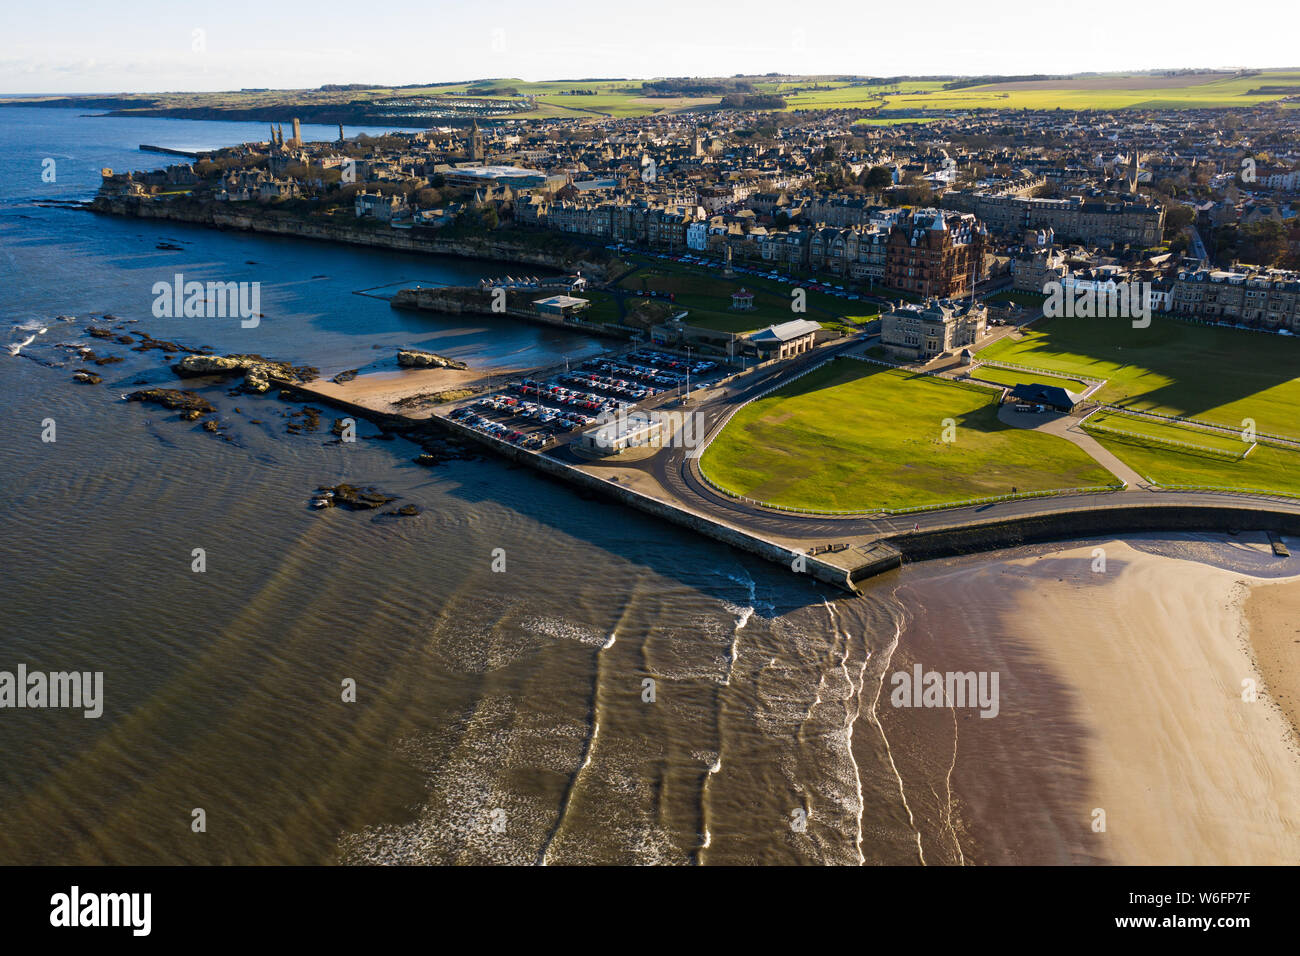 Vue aérienne de St Andrews depuis West Sands. La côte rocheuse et le vieux parcours de St Andrews sont tous deux visibles sur cette photo époustouflante. Banque D'Images